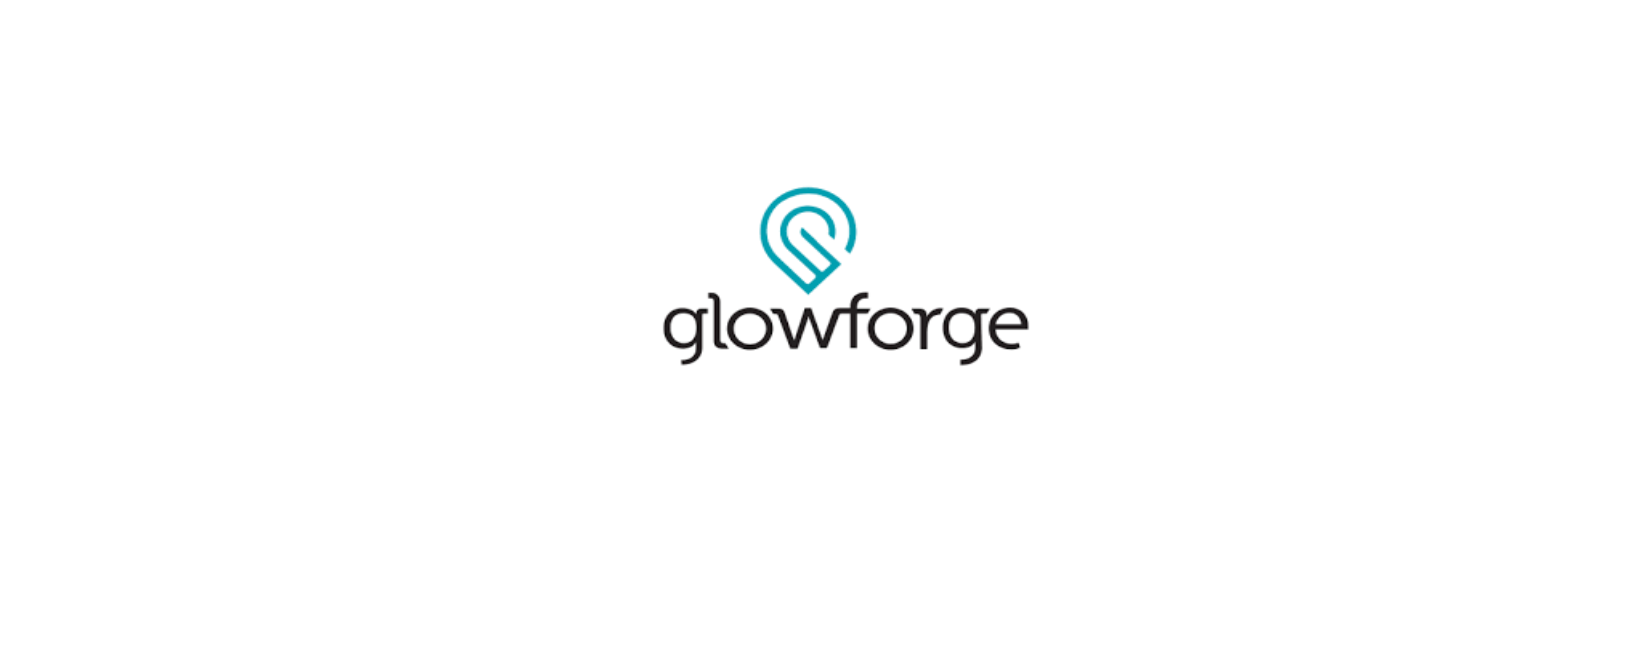 Glowforge Discount Code 2022